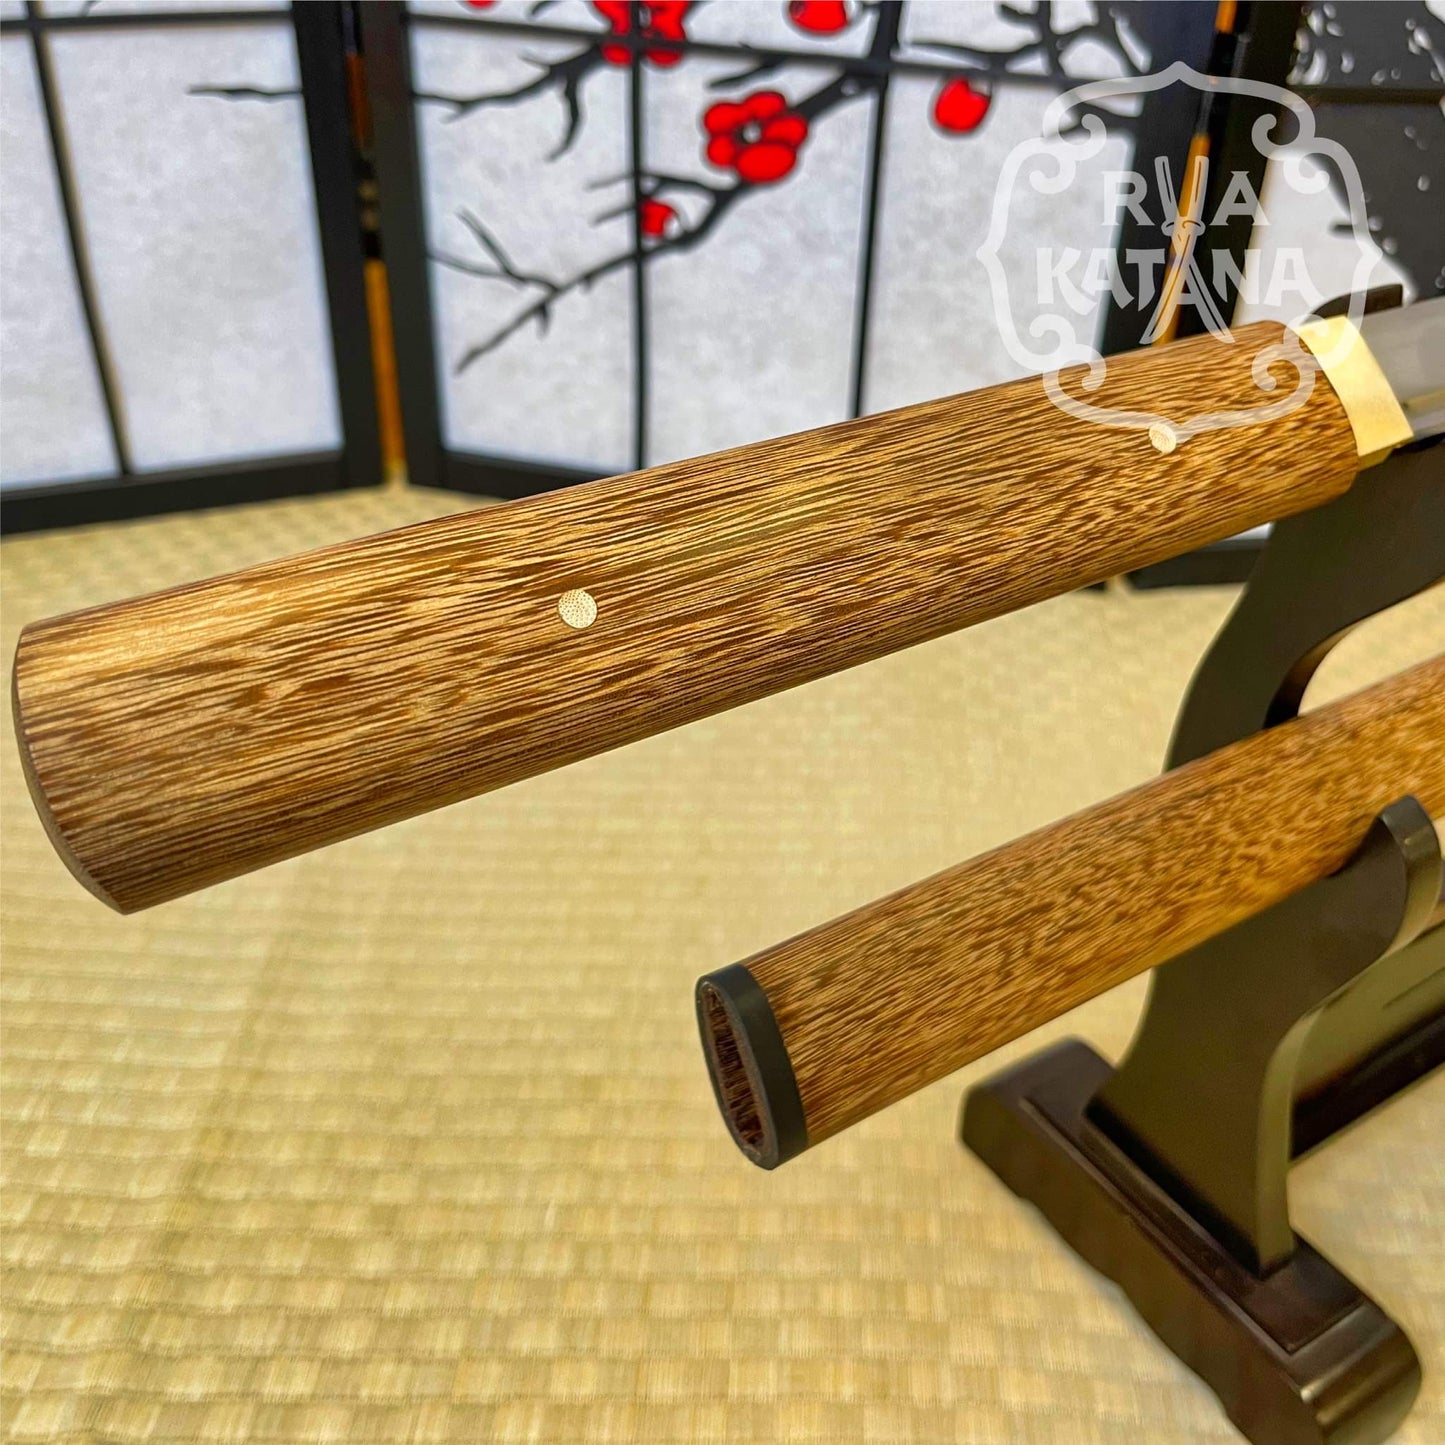 Shirasaya Chokuto stick sword, spring Steel Blade